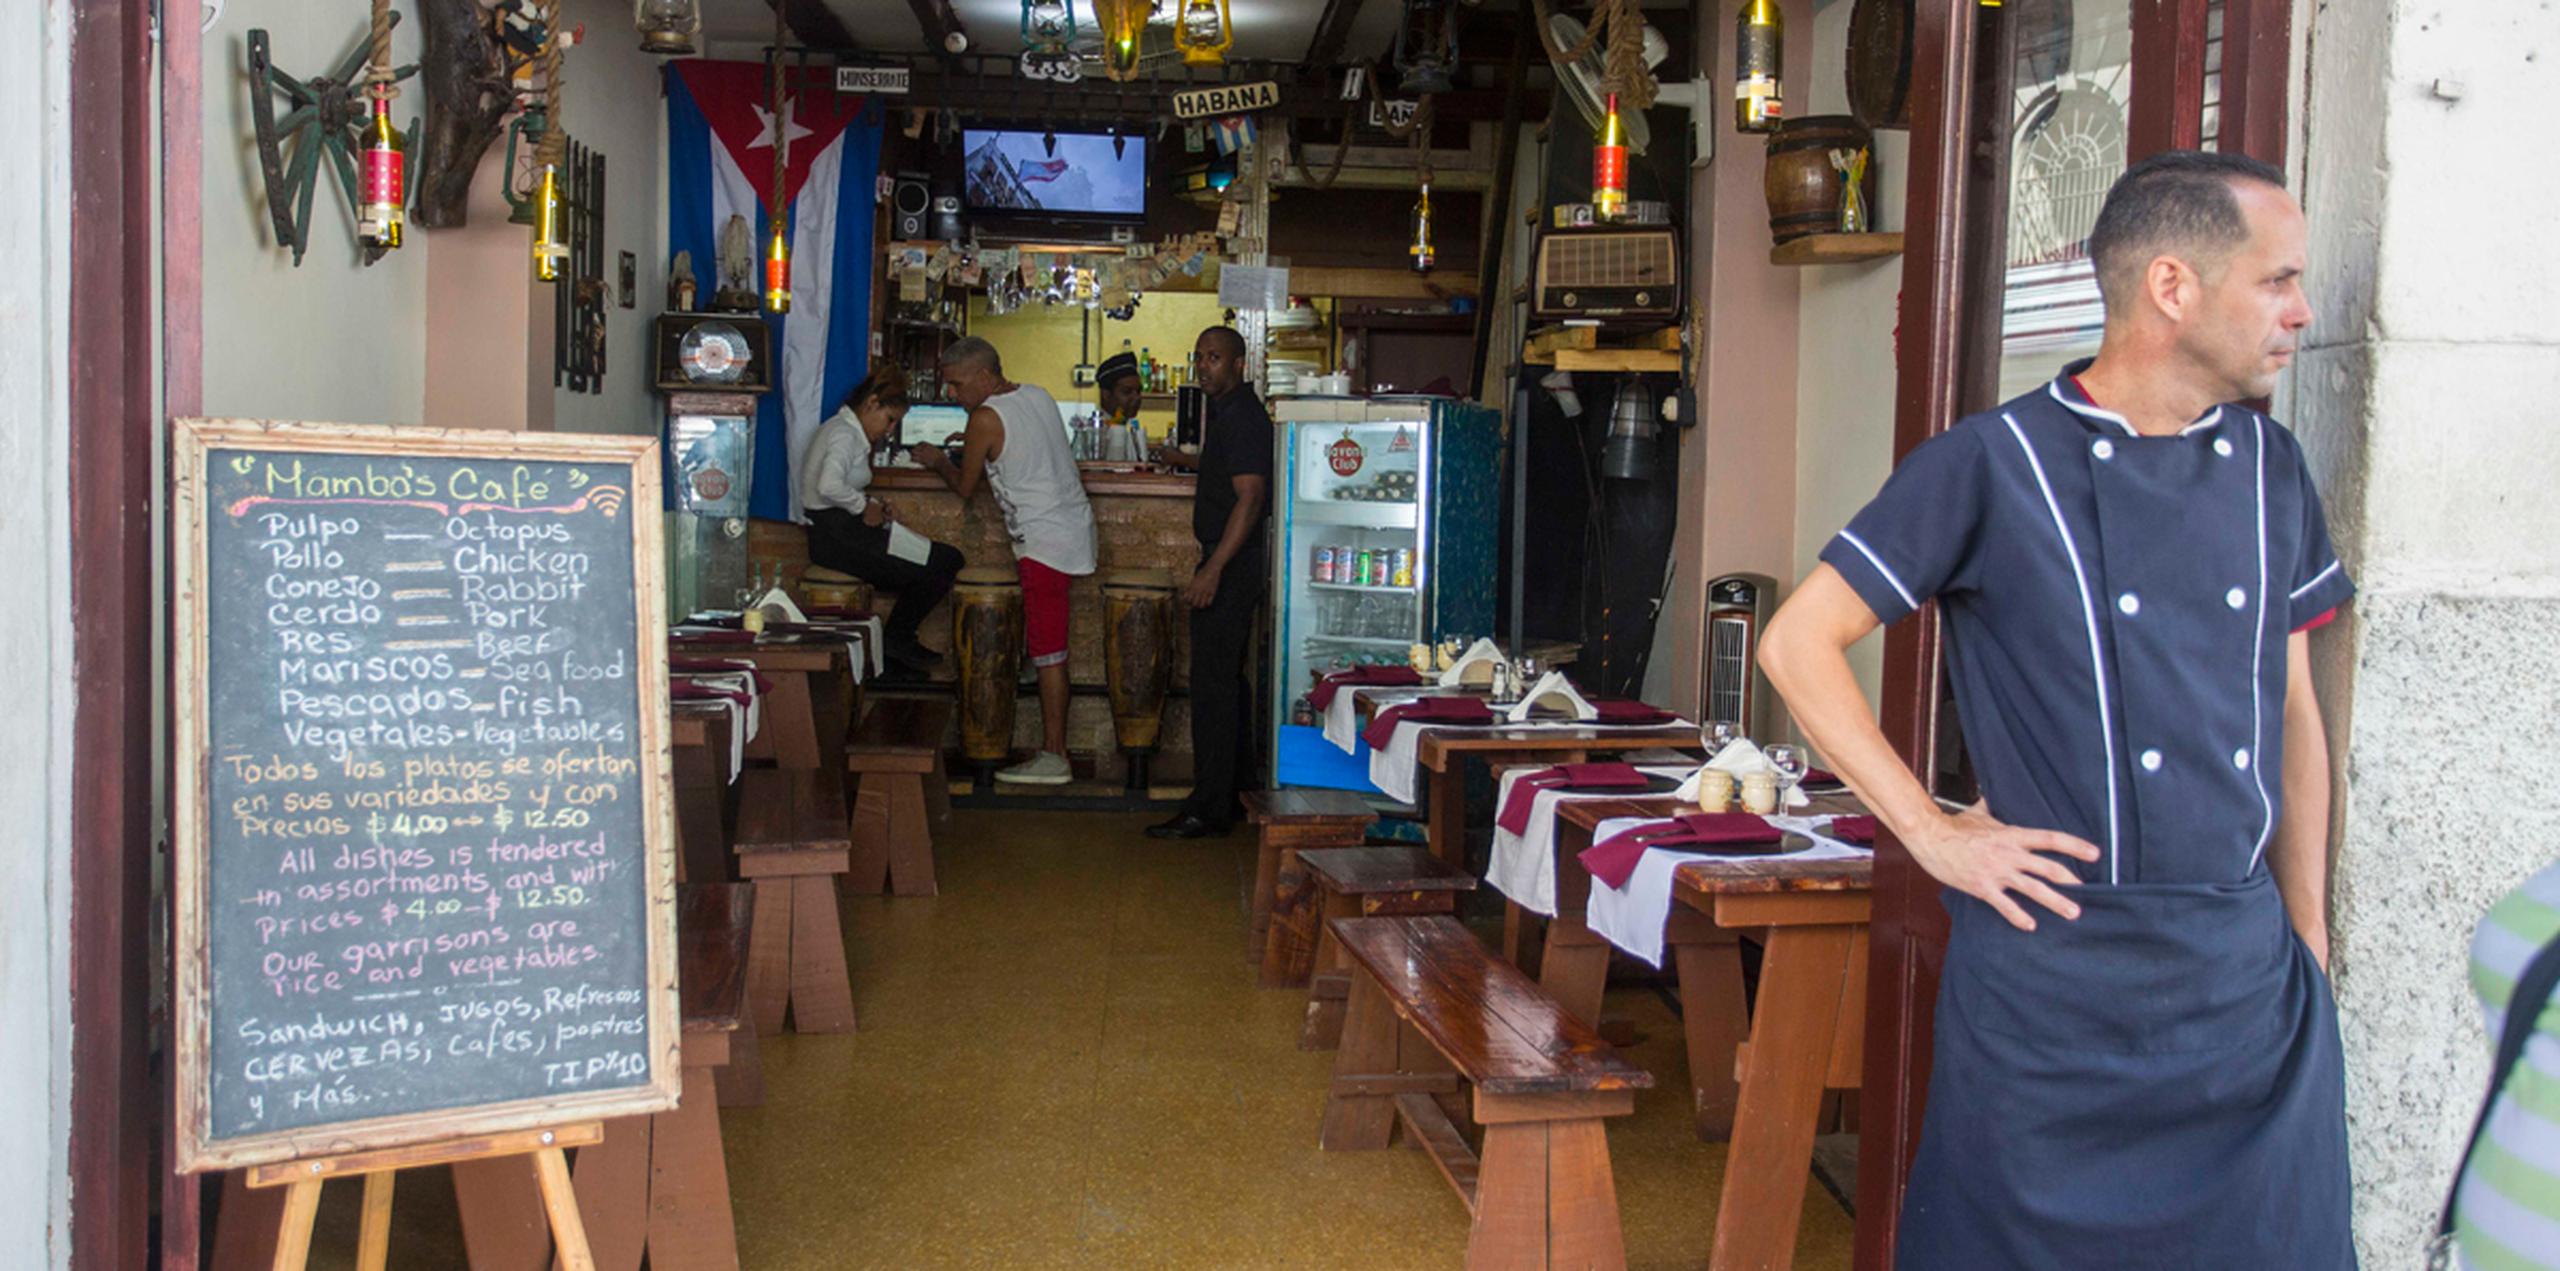 Miles de emprendedores cubanos invirtieron en viviendas privadas, autos y restaurantes con la esperanza de beneficiarse de una esperada ola de turistas estadounidenses en la isla. (AP)